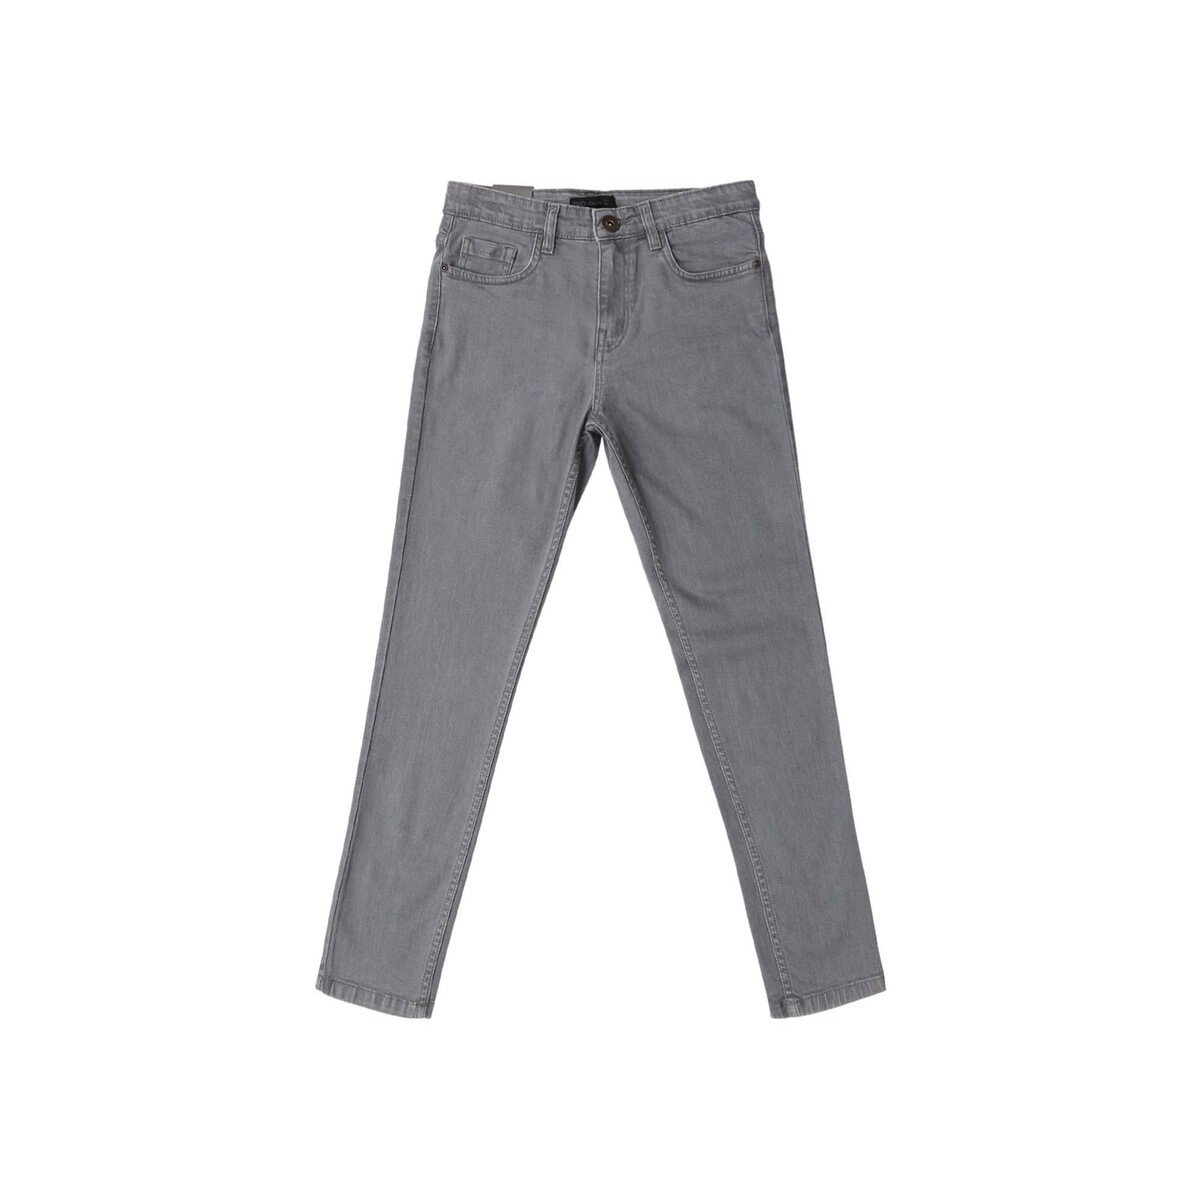 Reo Teen Boy Basic Denim Jeans B1TB015EE, 11-12Y Online at Best Price ...